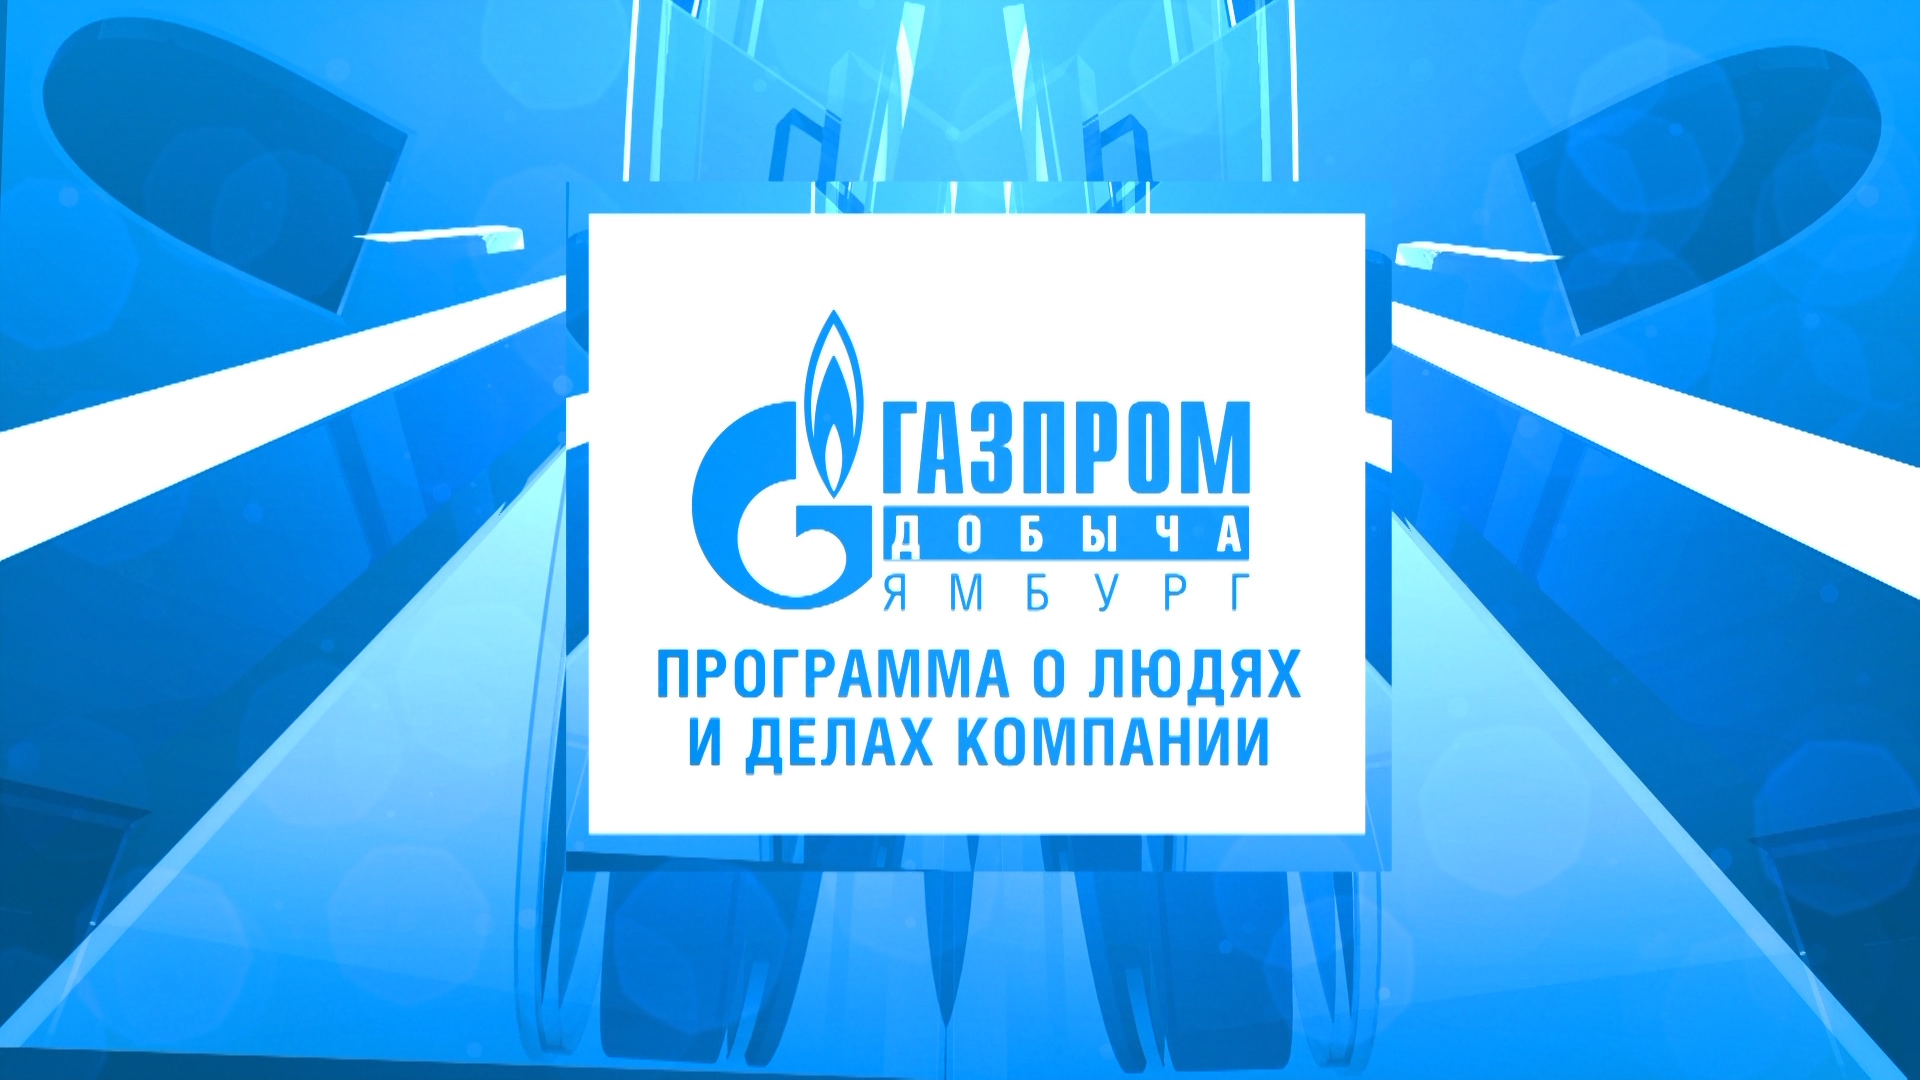 5 декабря _ Программа о людях делах компании _Газпром добыча Ямбург_